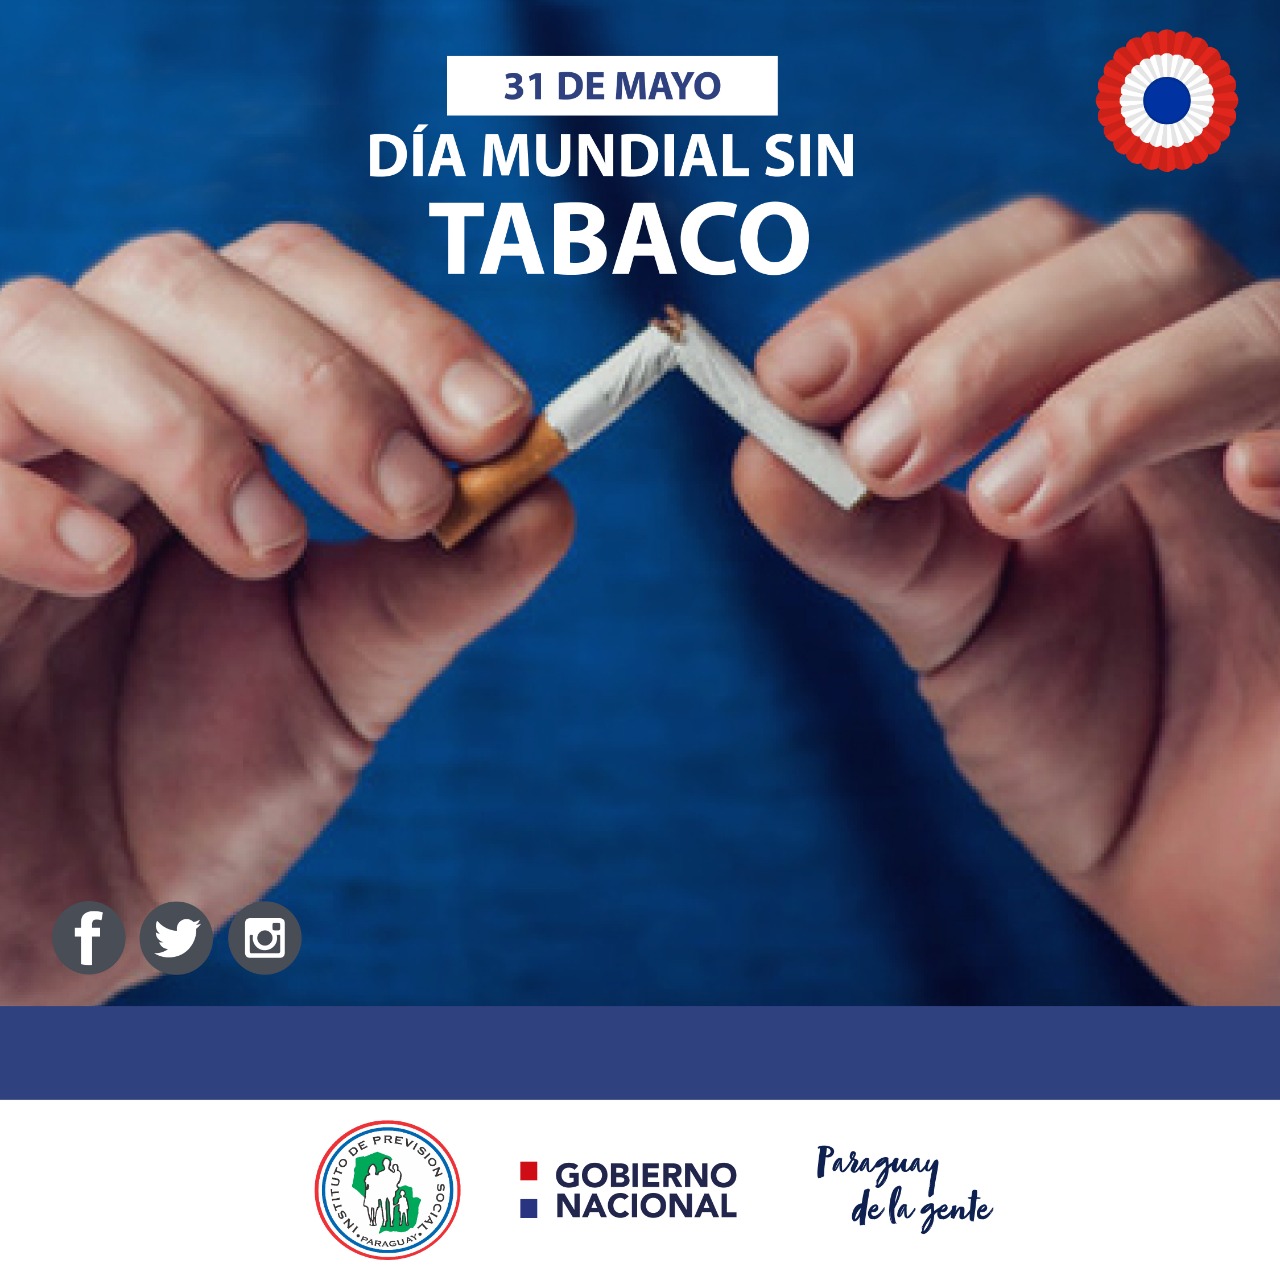 Fumadores tienen un mayor riesgo de desarrollar síntomas graves y de fallecer a causa de la COVID-19.